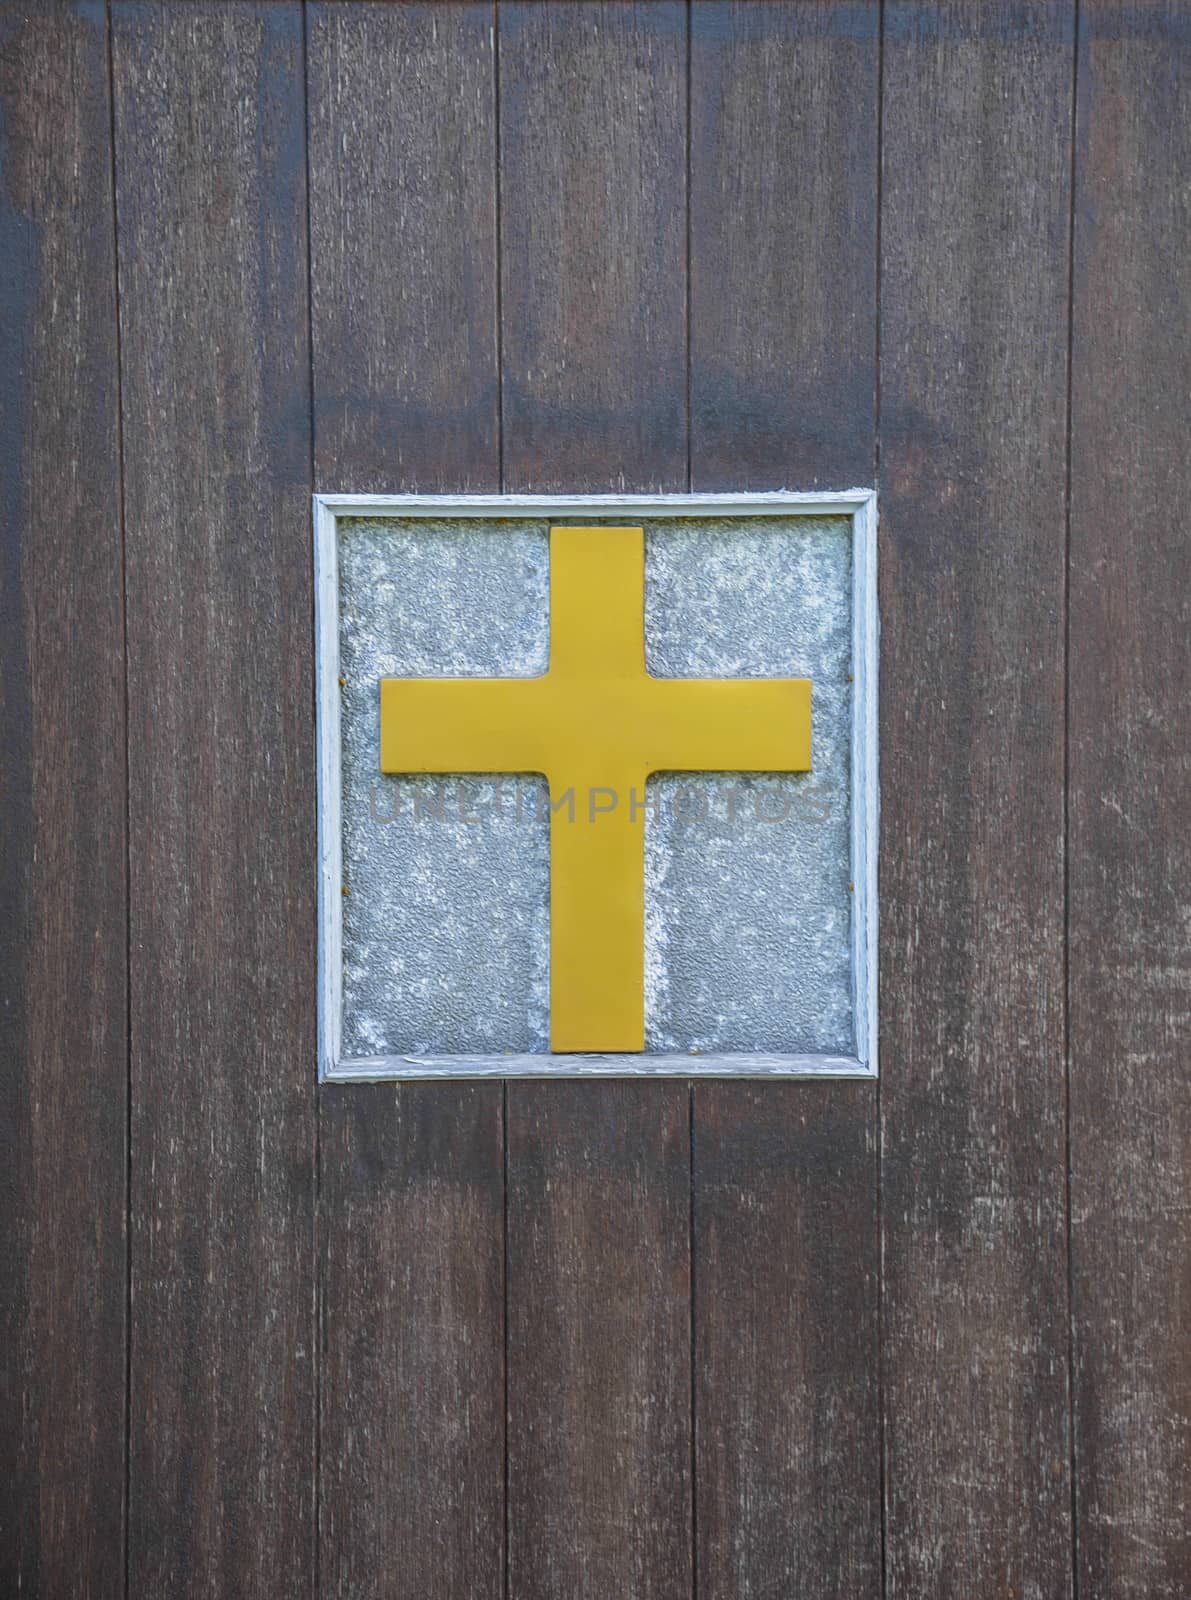 Cross on wooden door1 by gjeerawut